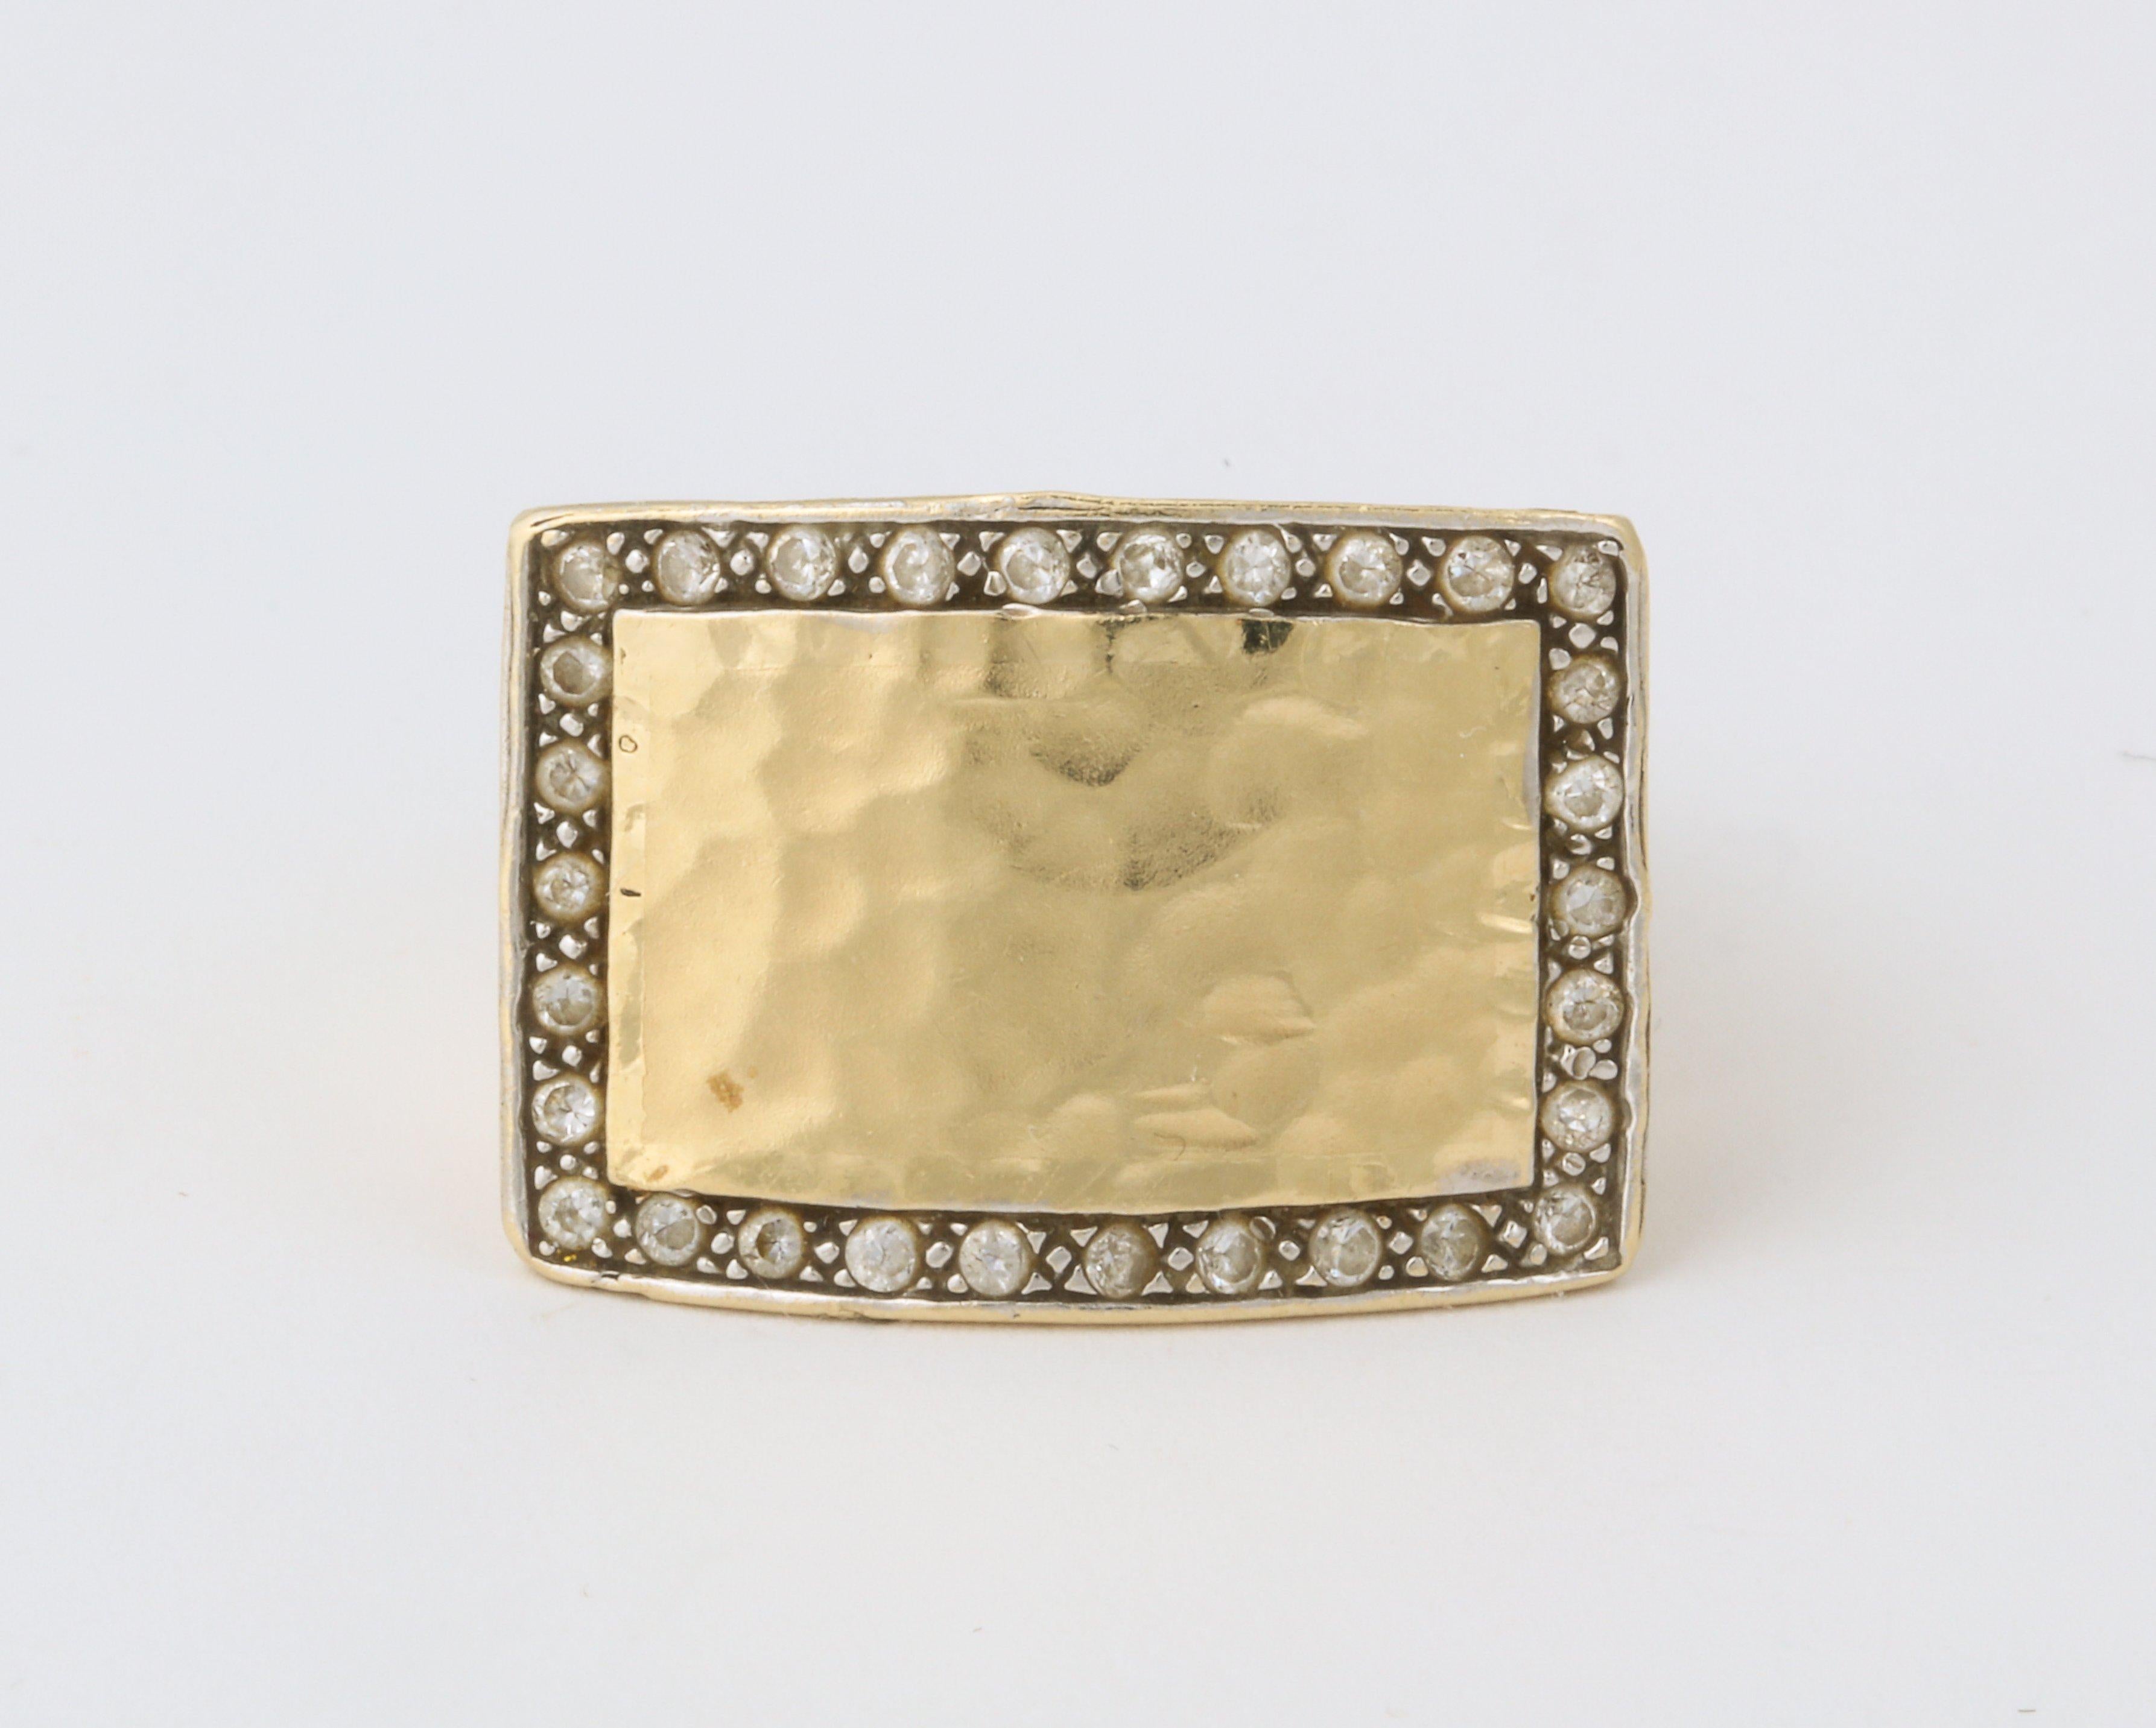 Ein atemberaubender, handgehämmerter Ring aus 18 Karat Gold mit eingefassten Diamanten entlang der Kante.  Die rechteckige Form macht es sehr ansprechend, sowohl am Mittelfinger als auch am
Ringfinger.  